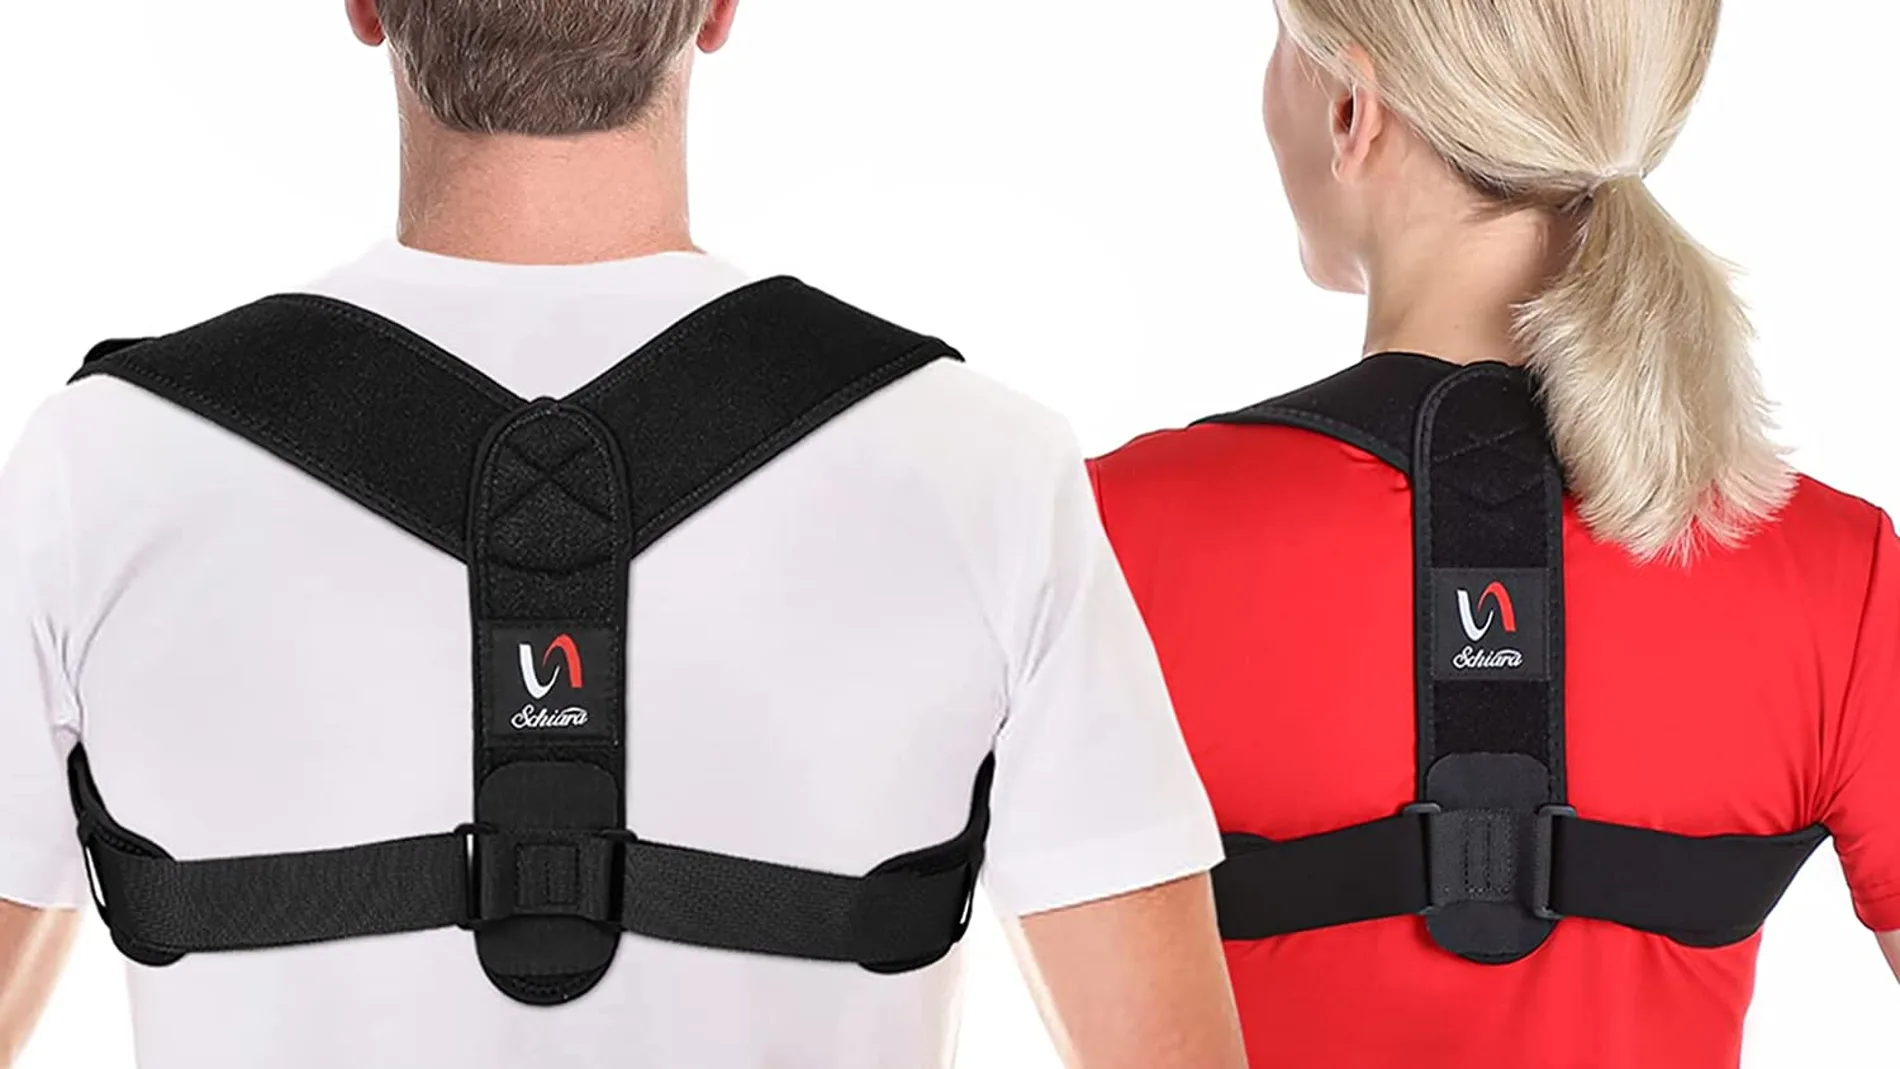 El mejor corrector de postura para evitar dolores de espalda según los clientes y el más vendido